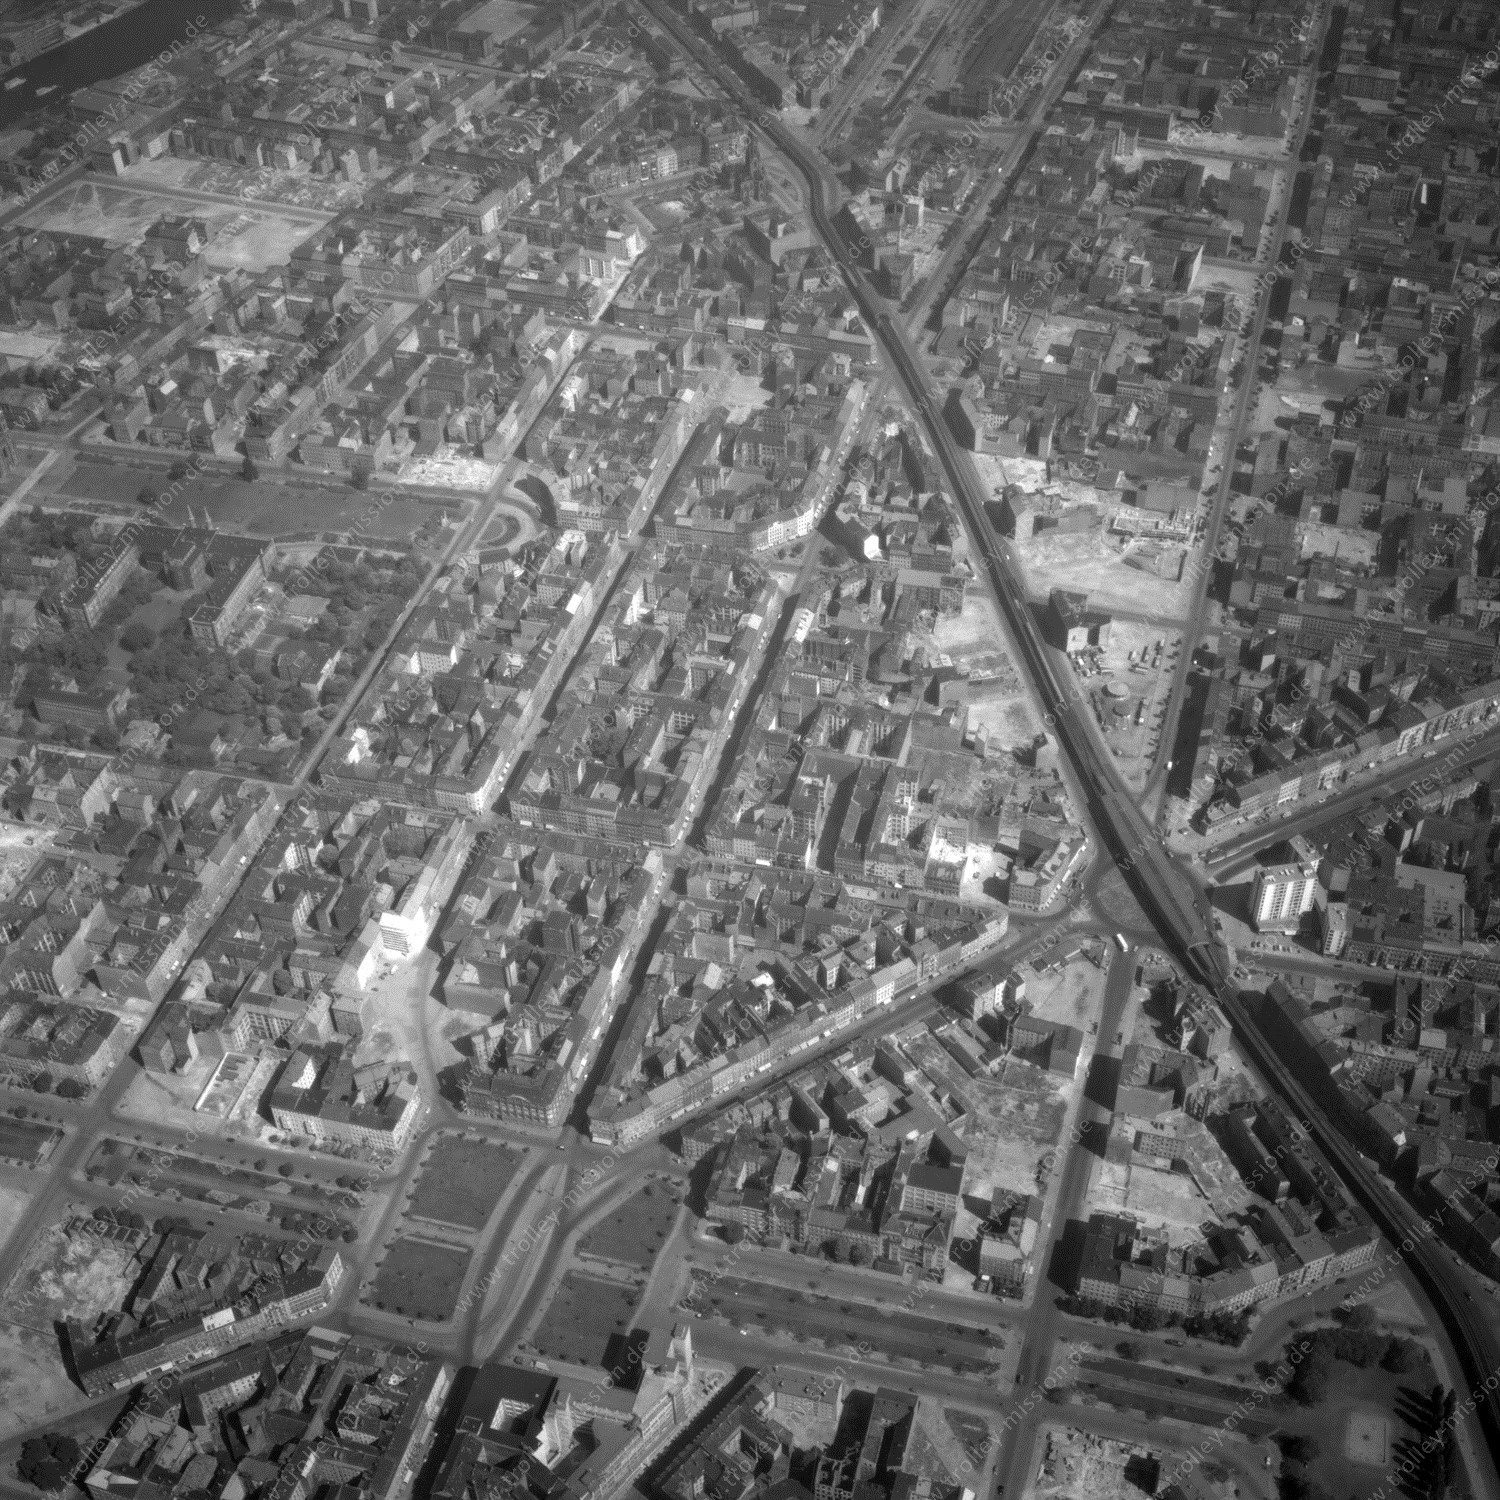 Alte Fotos und Luftbilder von Berlin - Luftbildaufnahme Nr. 06 - Historische Luftaufnahmen von West-Berlin aus dem Jahr 1954 - Flugstrecke Lima